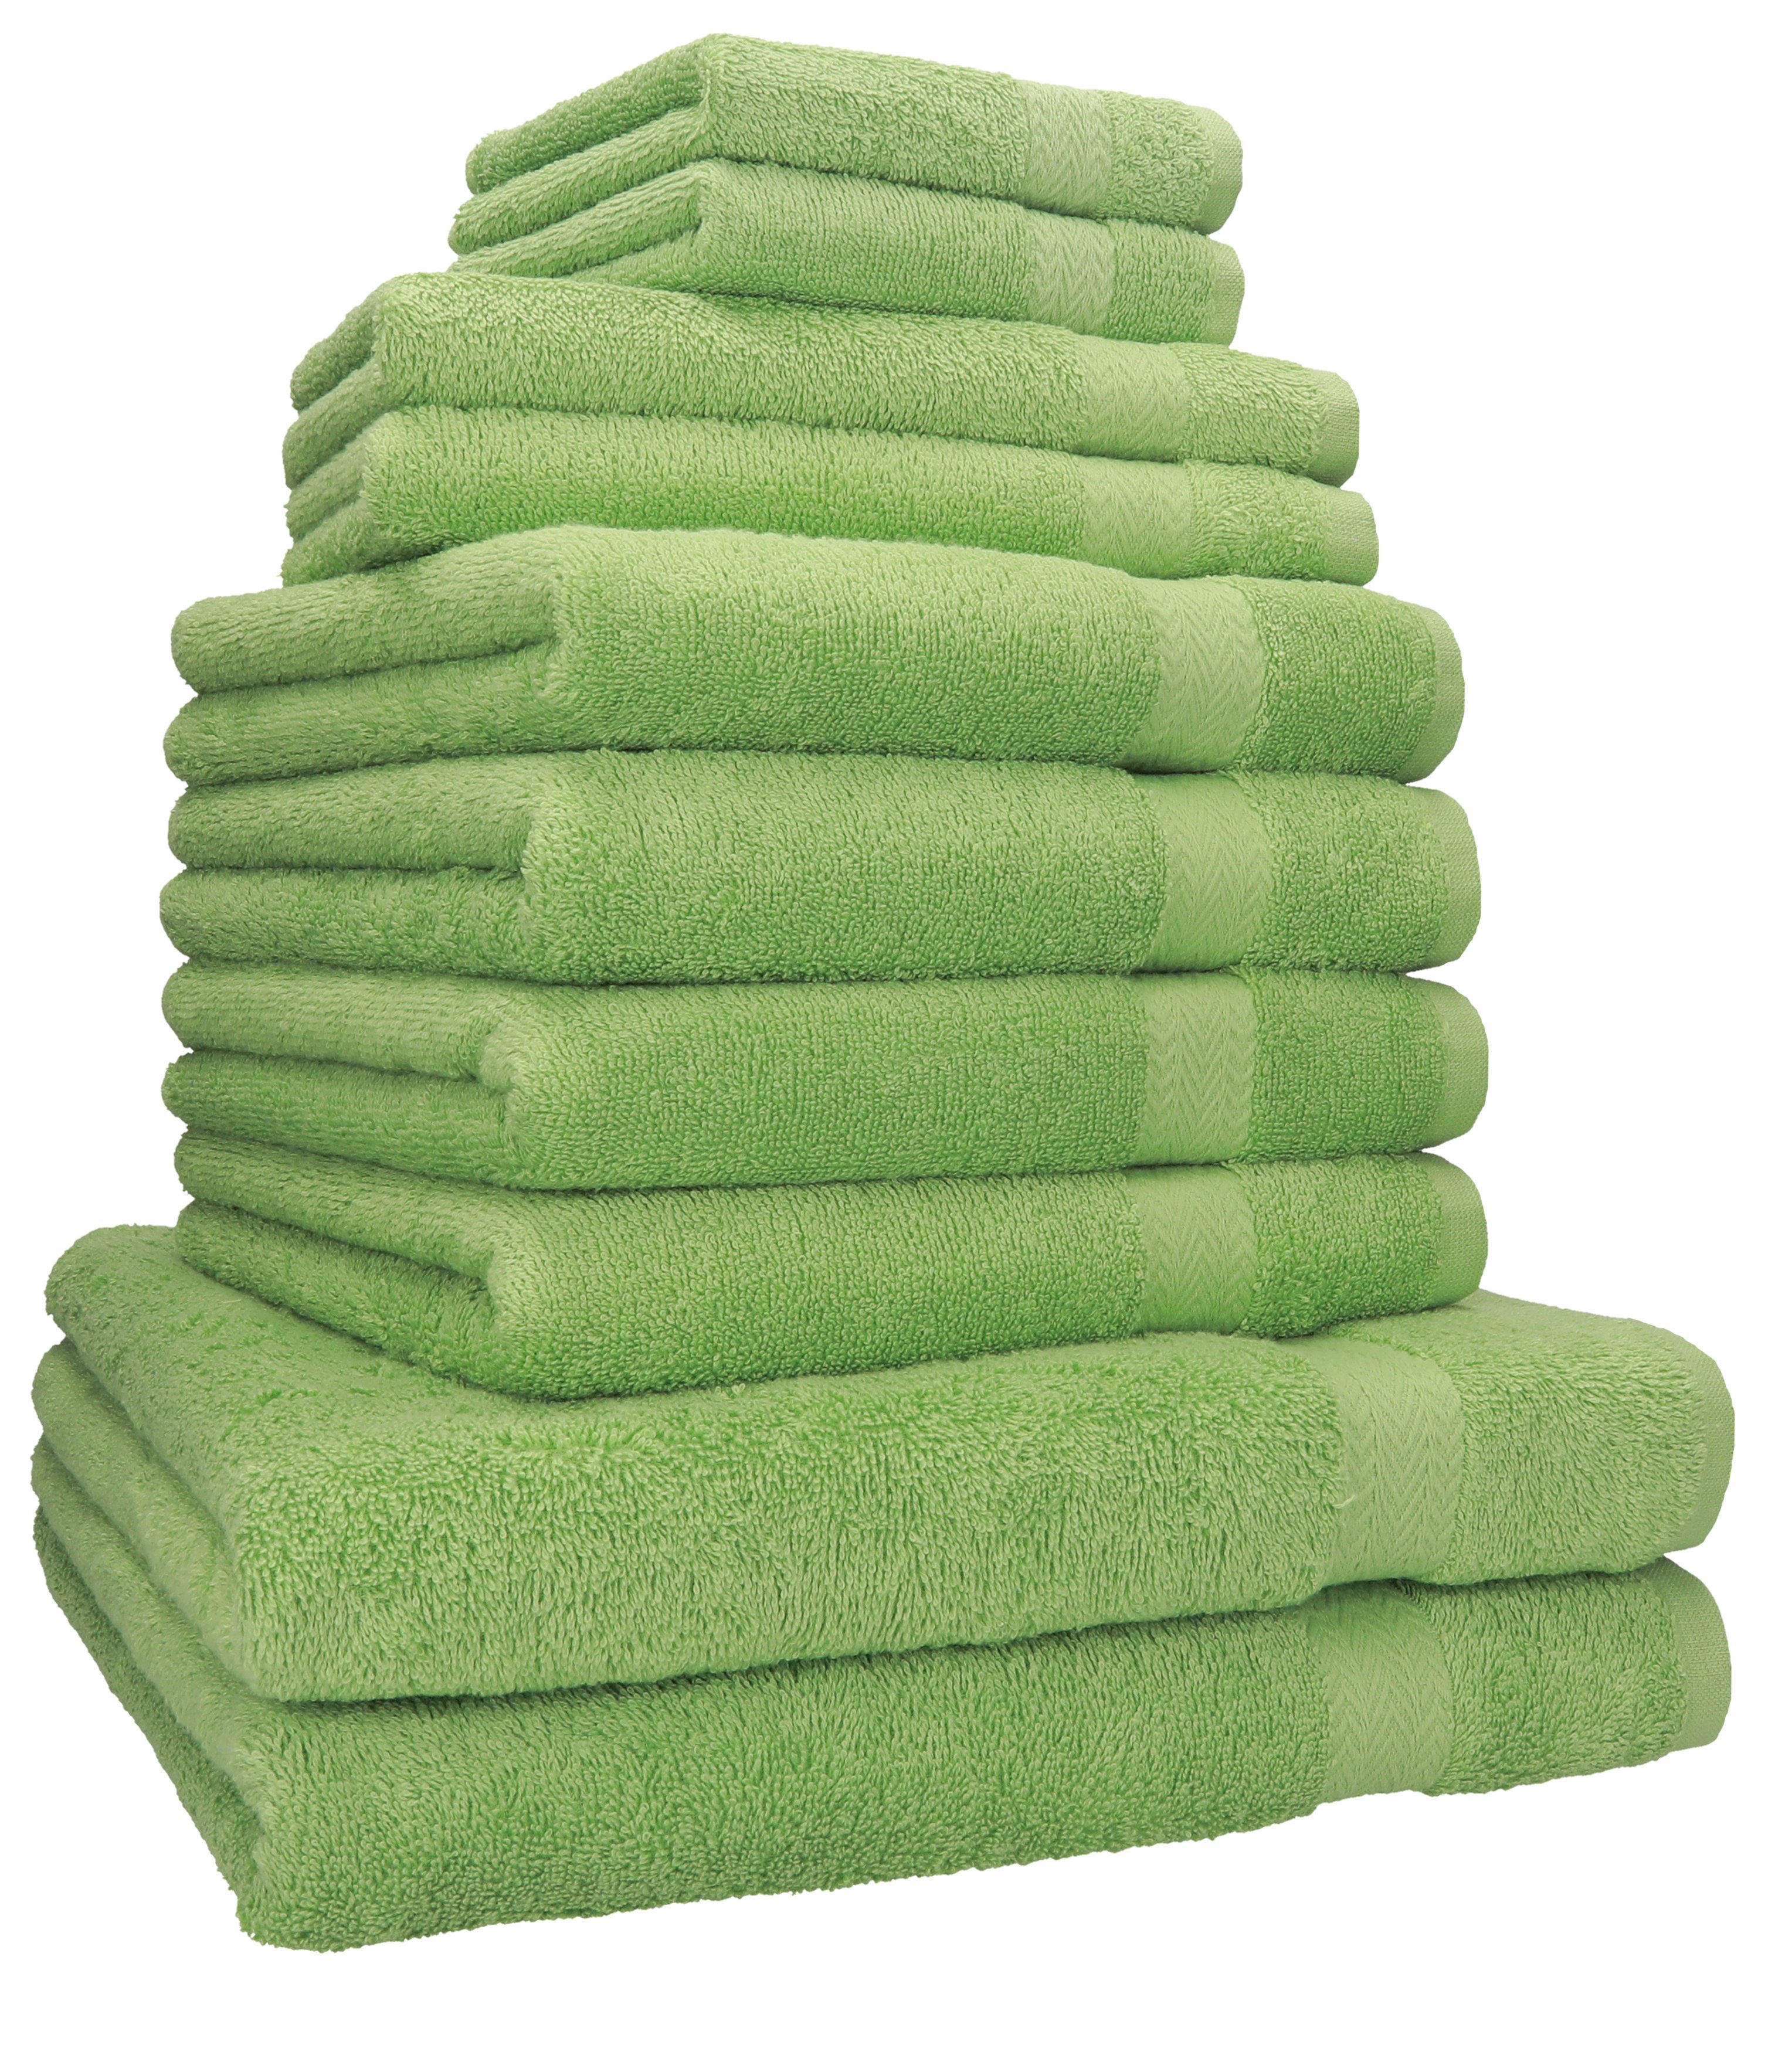 Betz Handtuch Set 4 Gästetücher 10-TLG. Baumwolle 2 2 100% Duschtücher apfelgrün Classic Handtücher Seiftücher, Handtuch-Set 2 (10-tlg) Baumwolle, 100